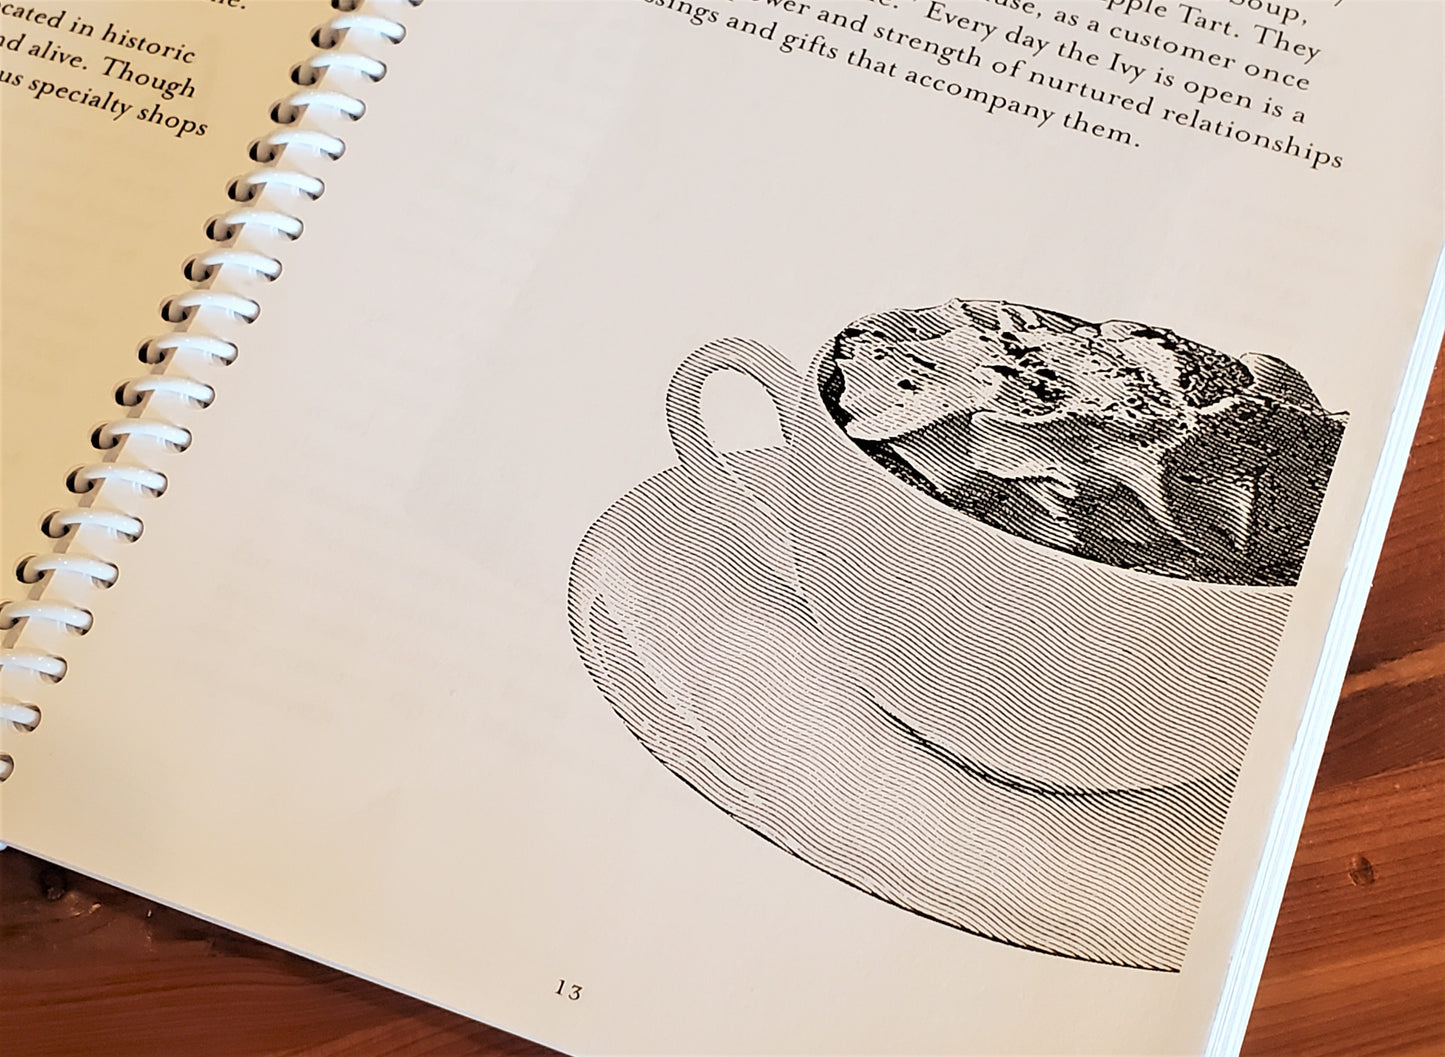 The Original Ivy Bake Shoppe Cookbook